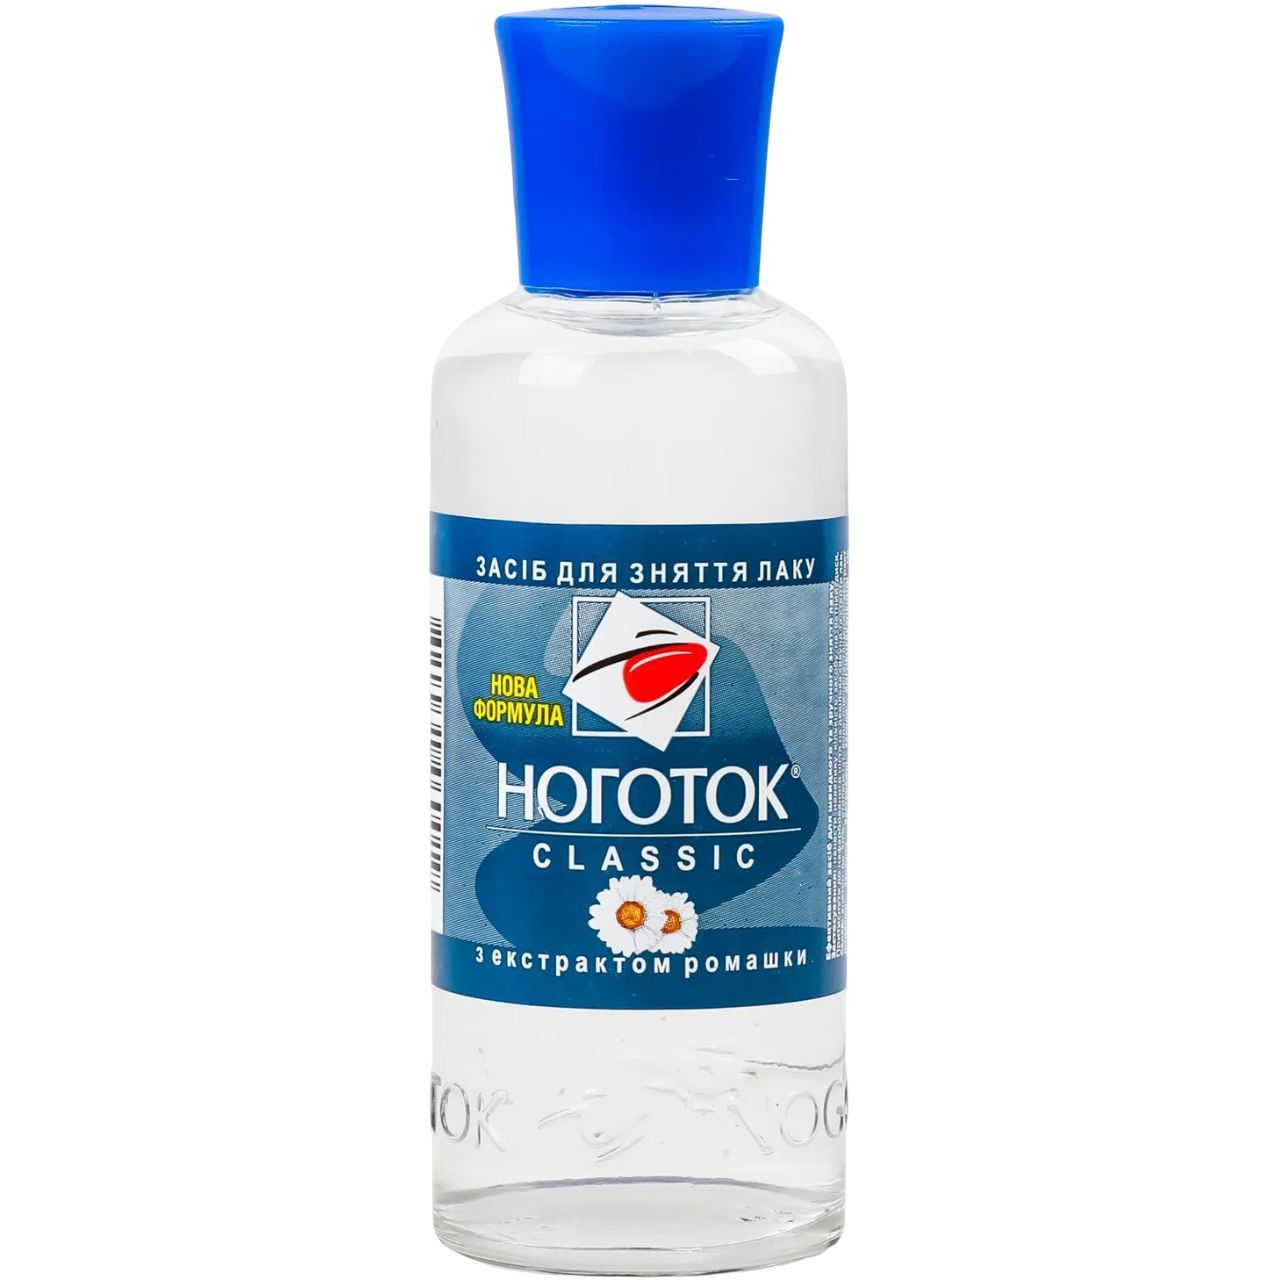 Жидкость для снятия лака Ноготок Classic с экстрактом ромашки 50 мл - фото 1